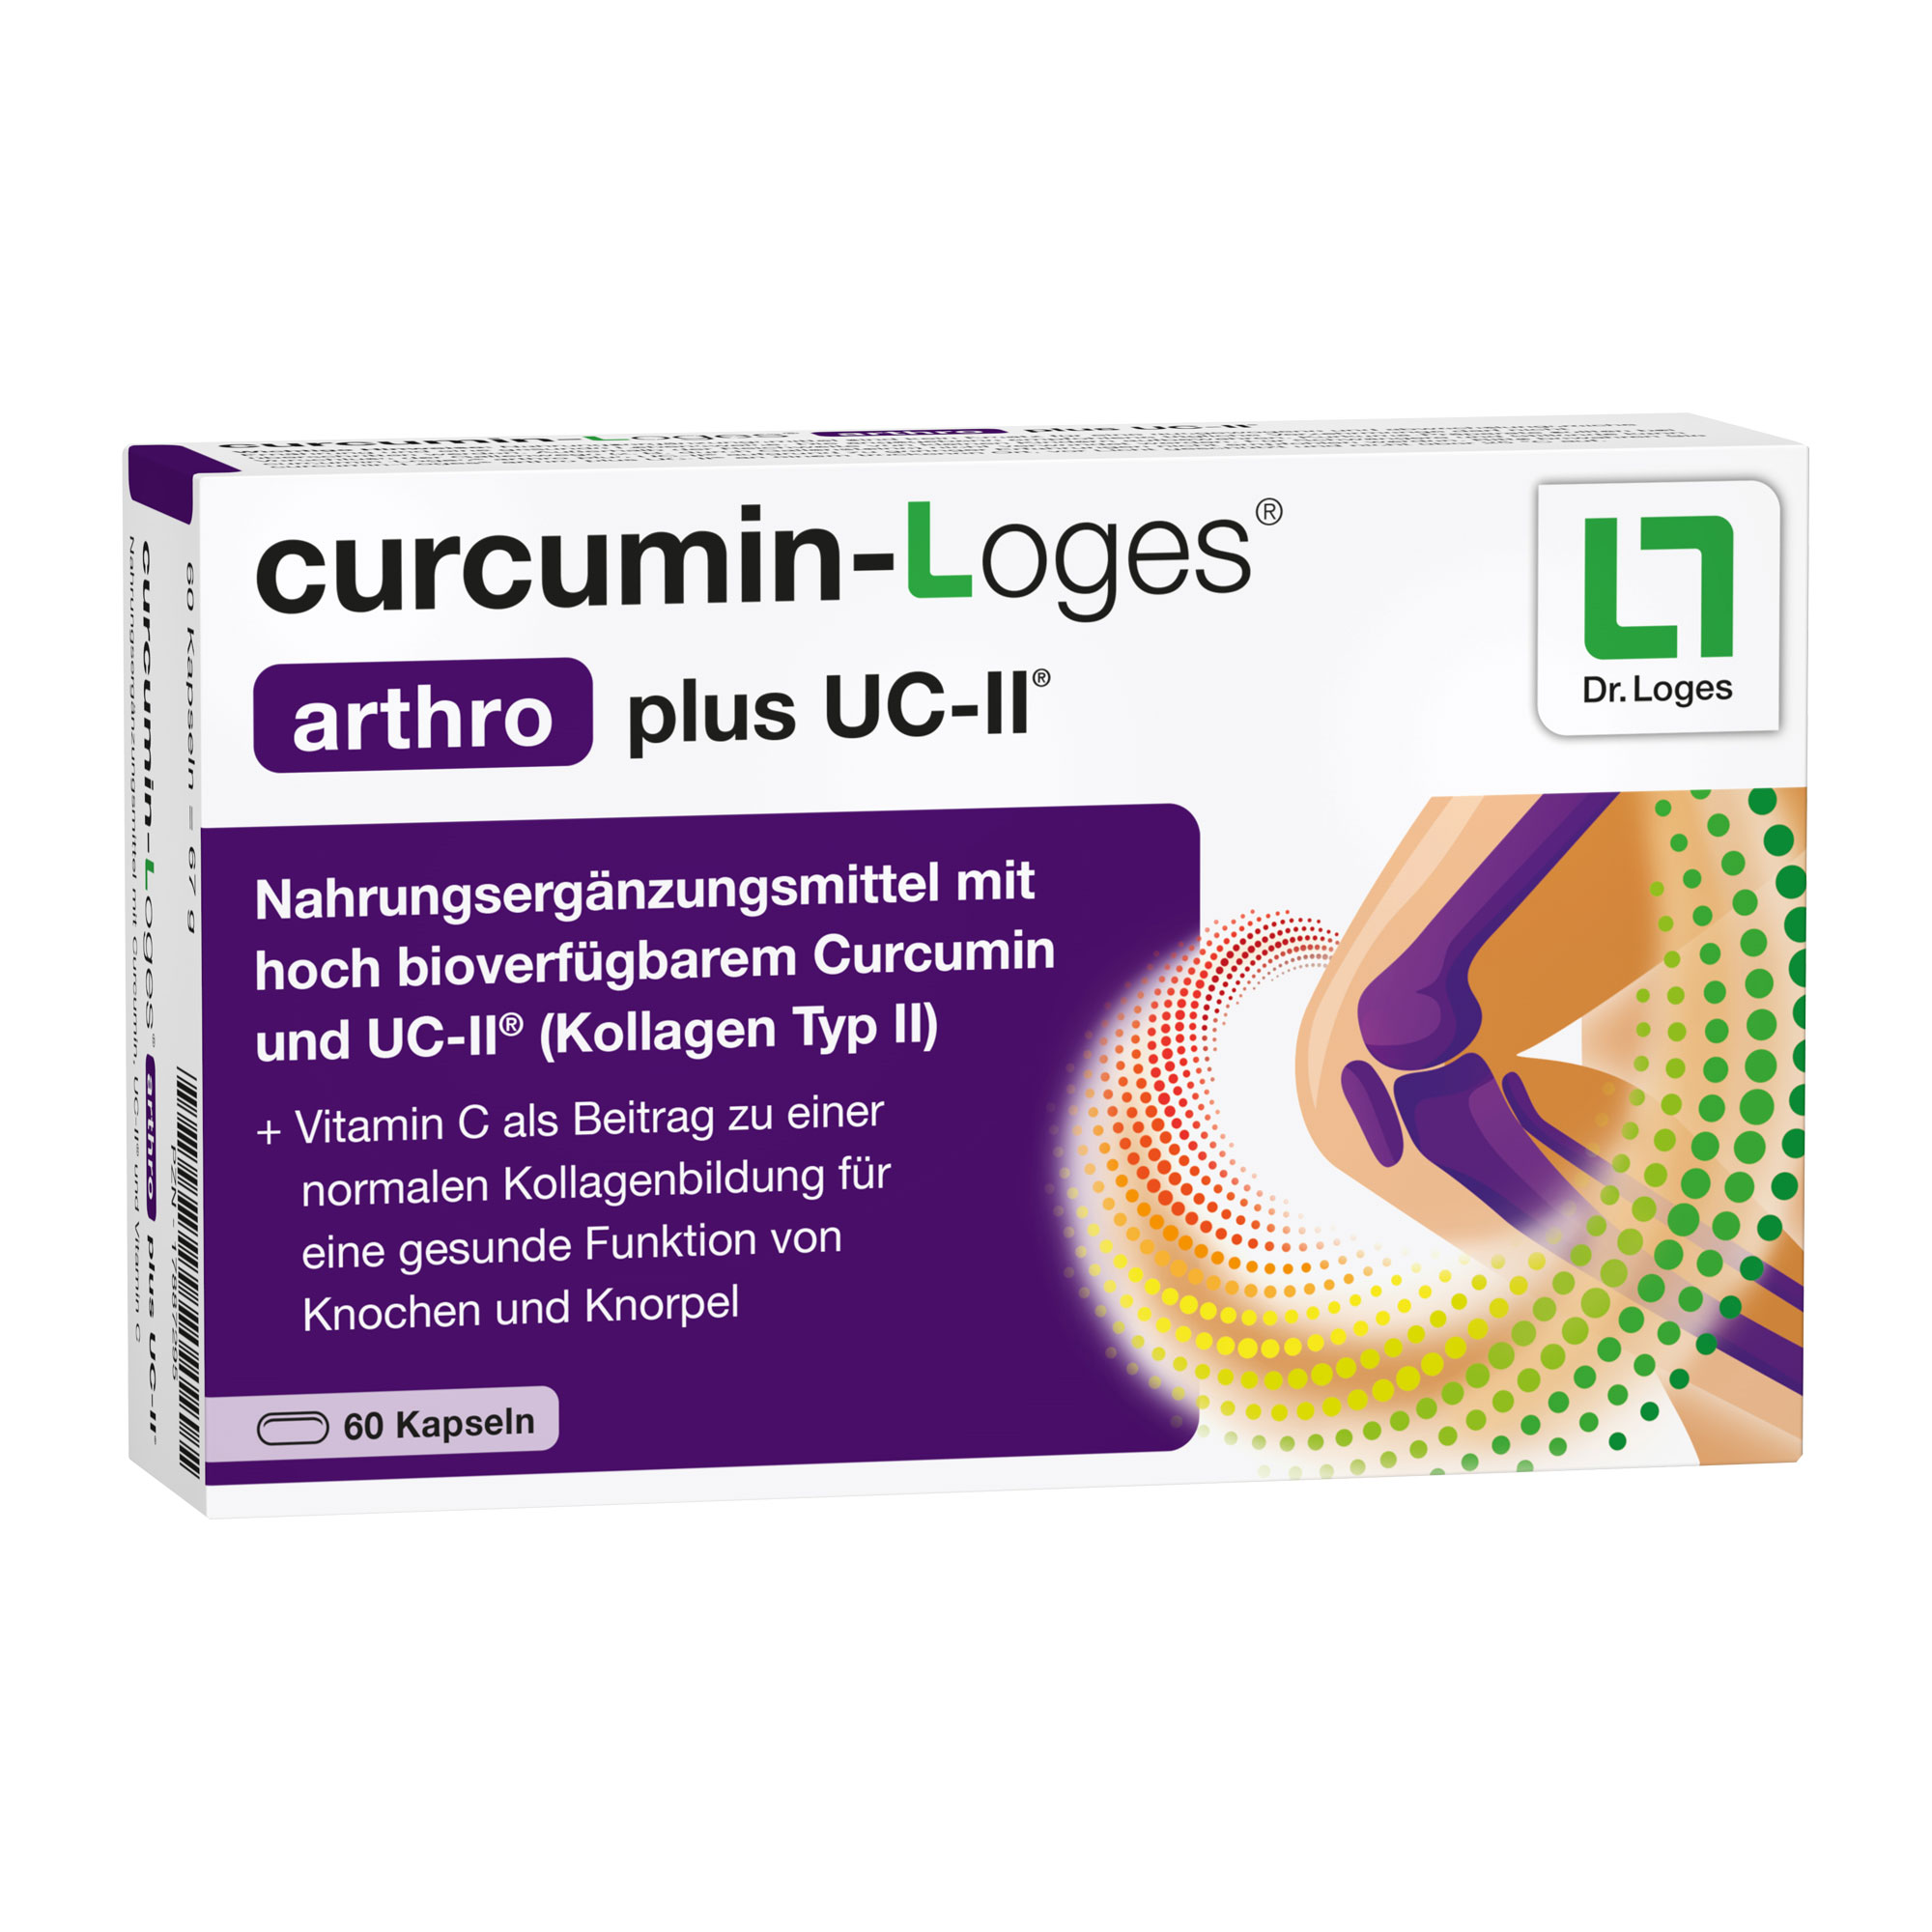 Nahrungsergänzungsmittel mit hoch bioverfügbarem Curcumin, UC-II® und Vitamin C.